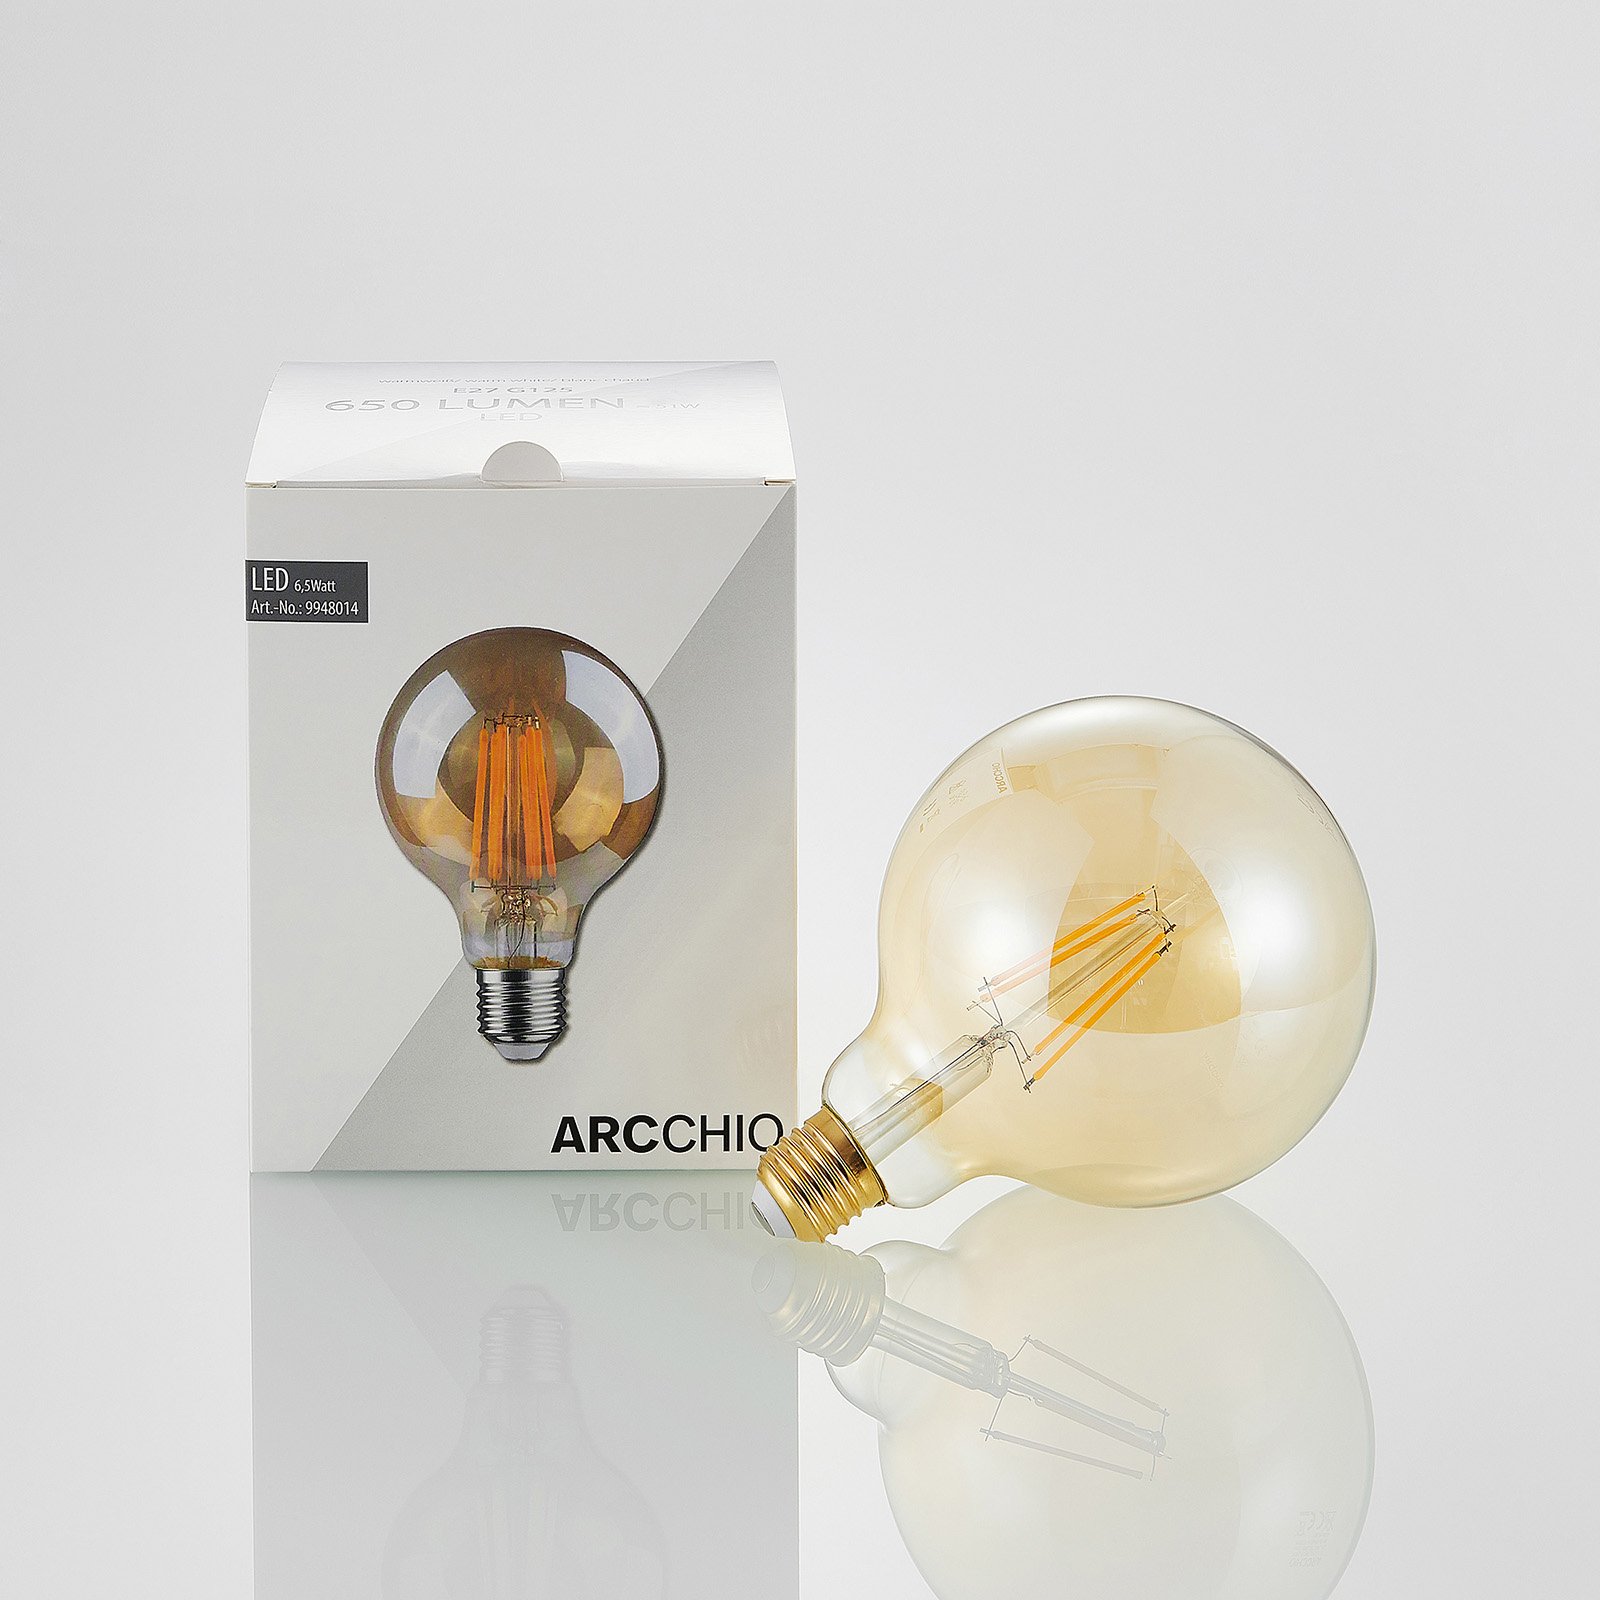 Immoraliteit snap Verlengen LED lamp E27 G125 6,5W 2.500K amber 3-step-dimmer | Lampen24.nl